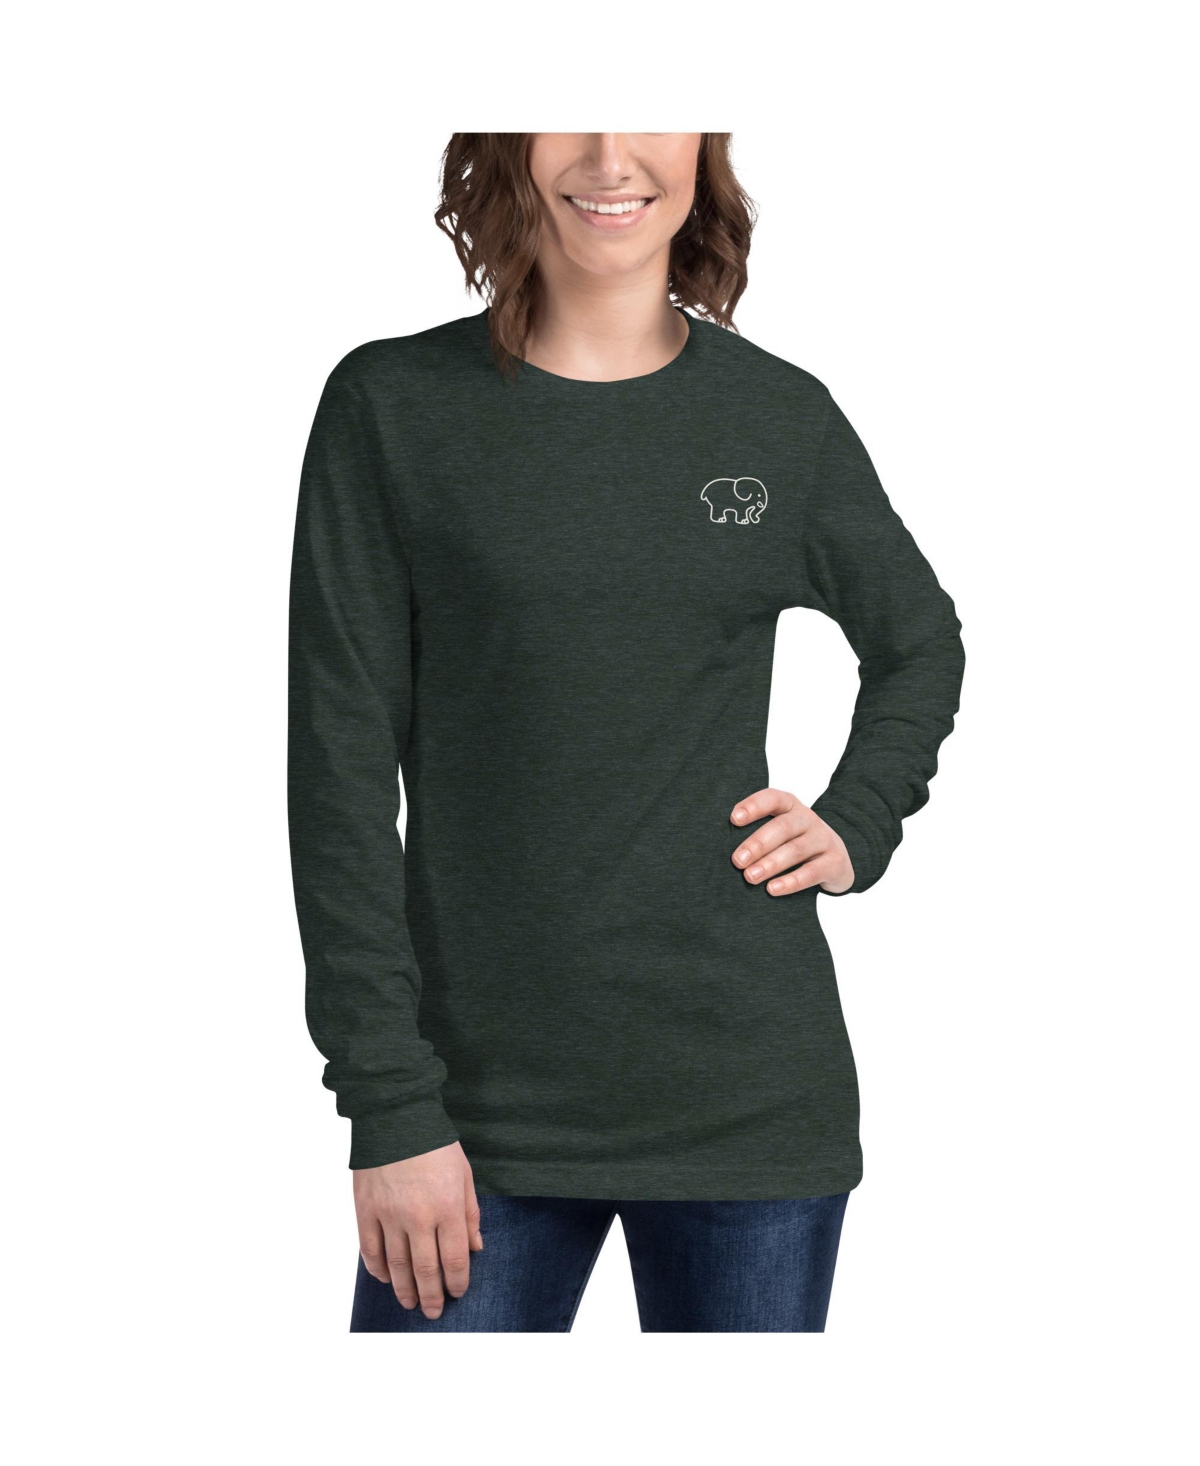 Savannah Long Sleeve T-Shirt - Forest green